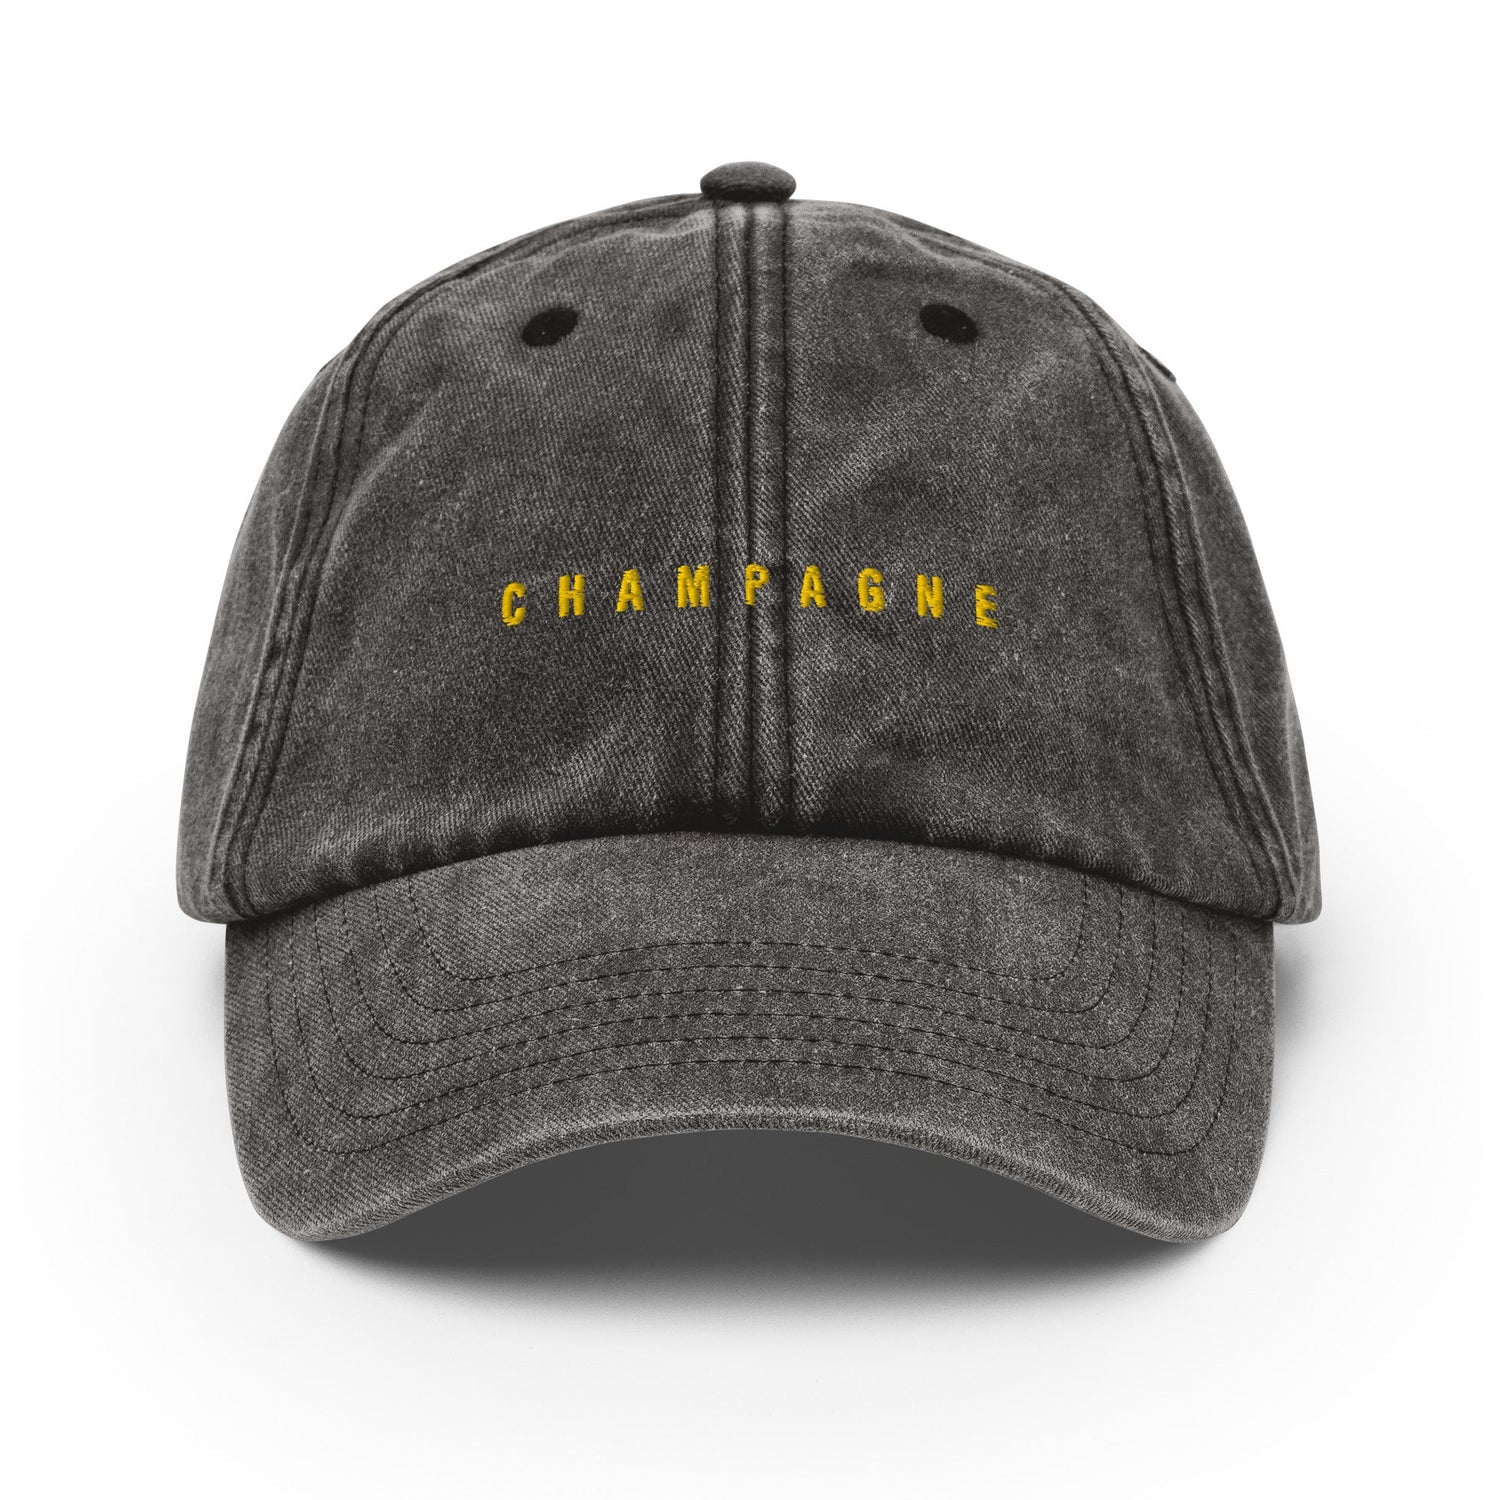 Der Champagne Vintage Hut